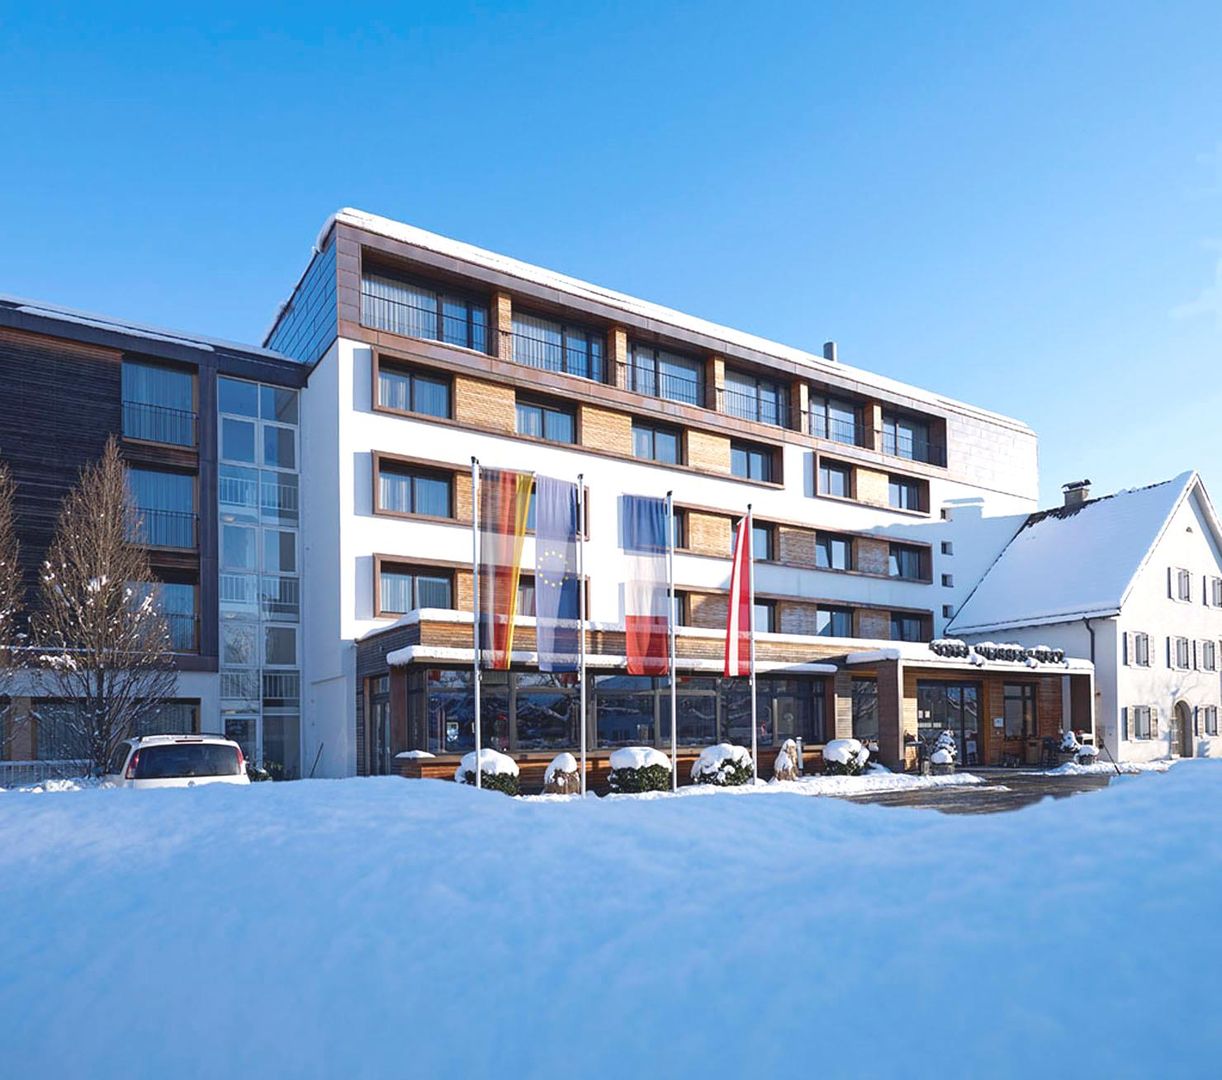 Meer info over Hotel Weisses Kreuz  bij Wintertrex